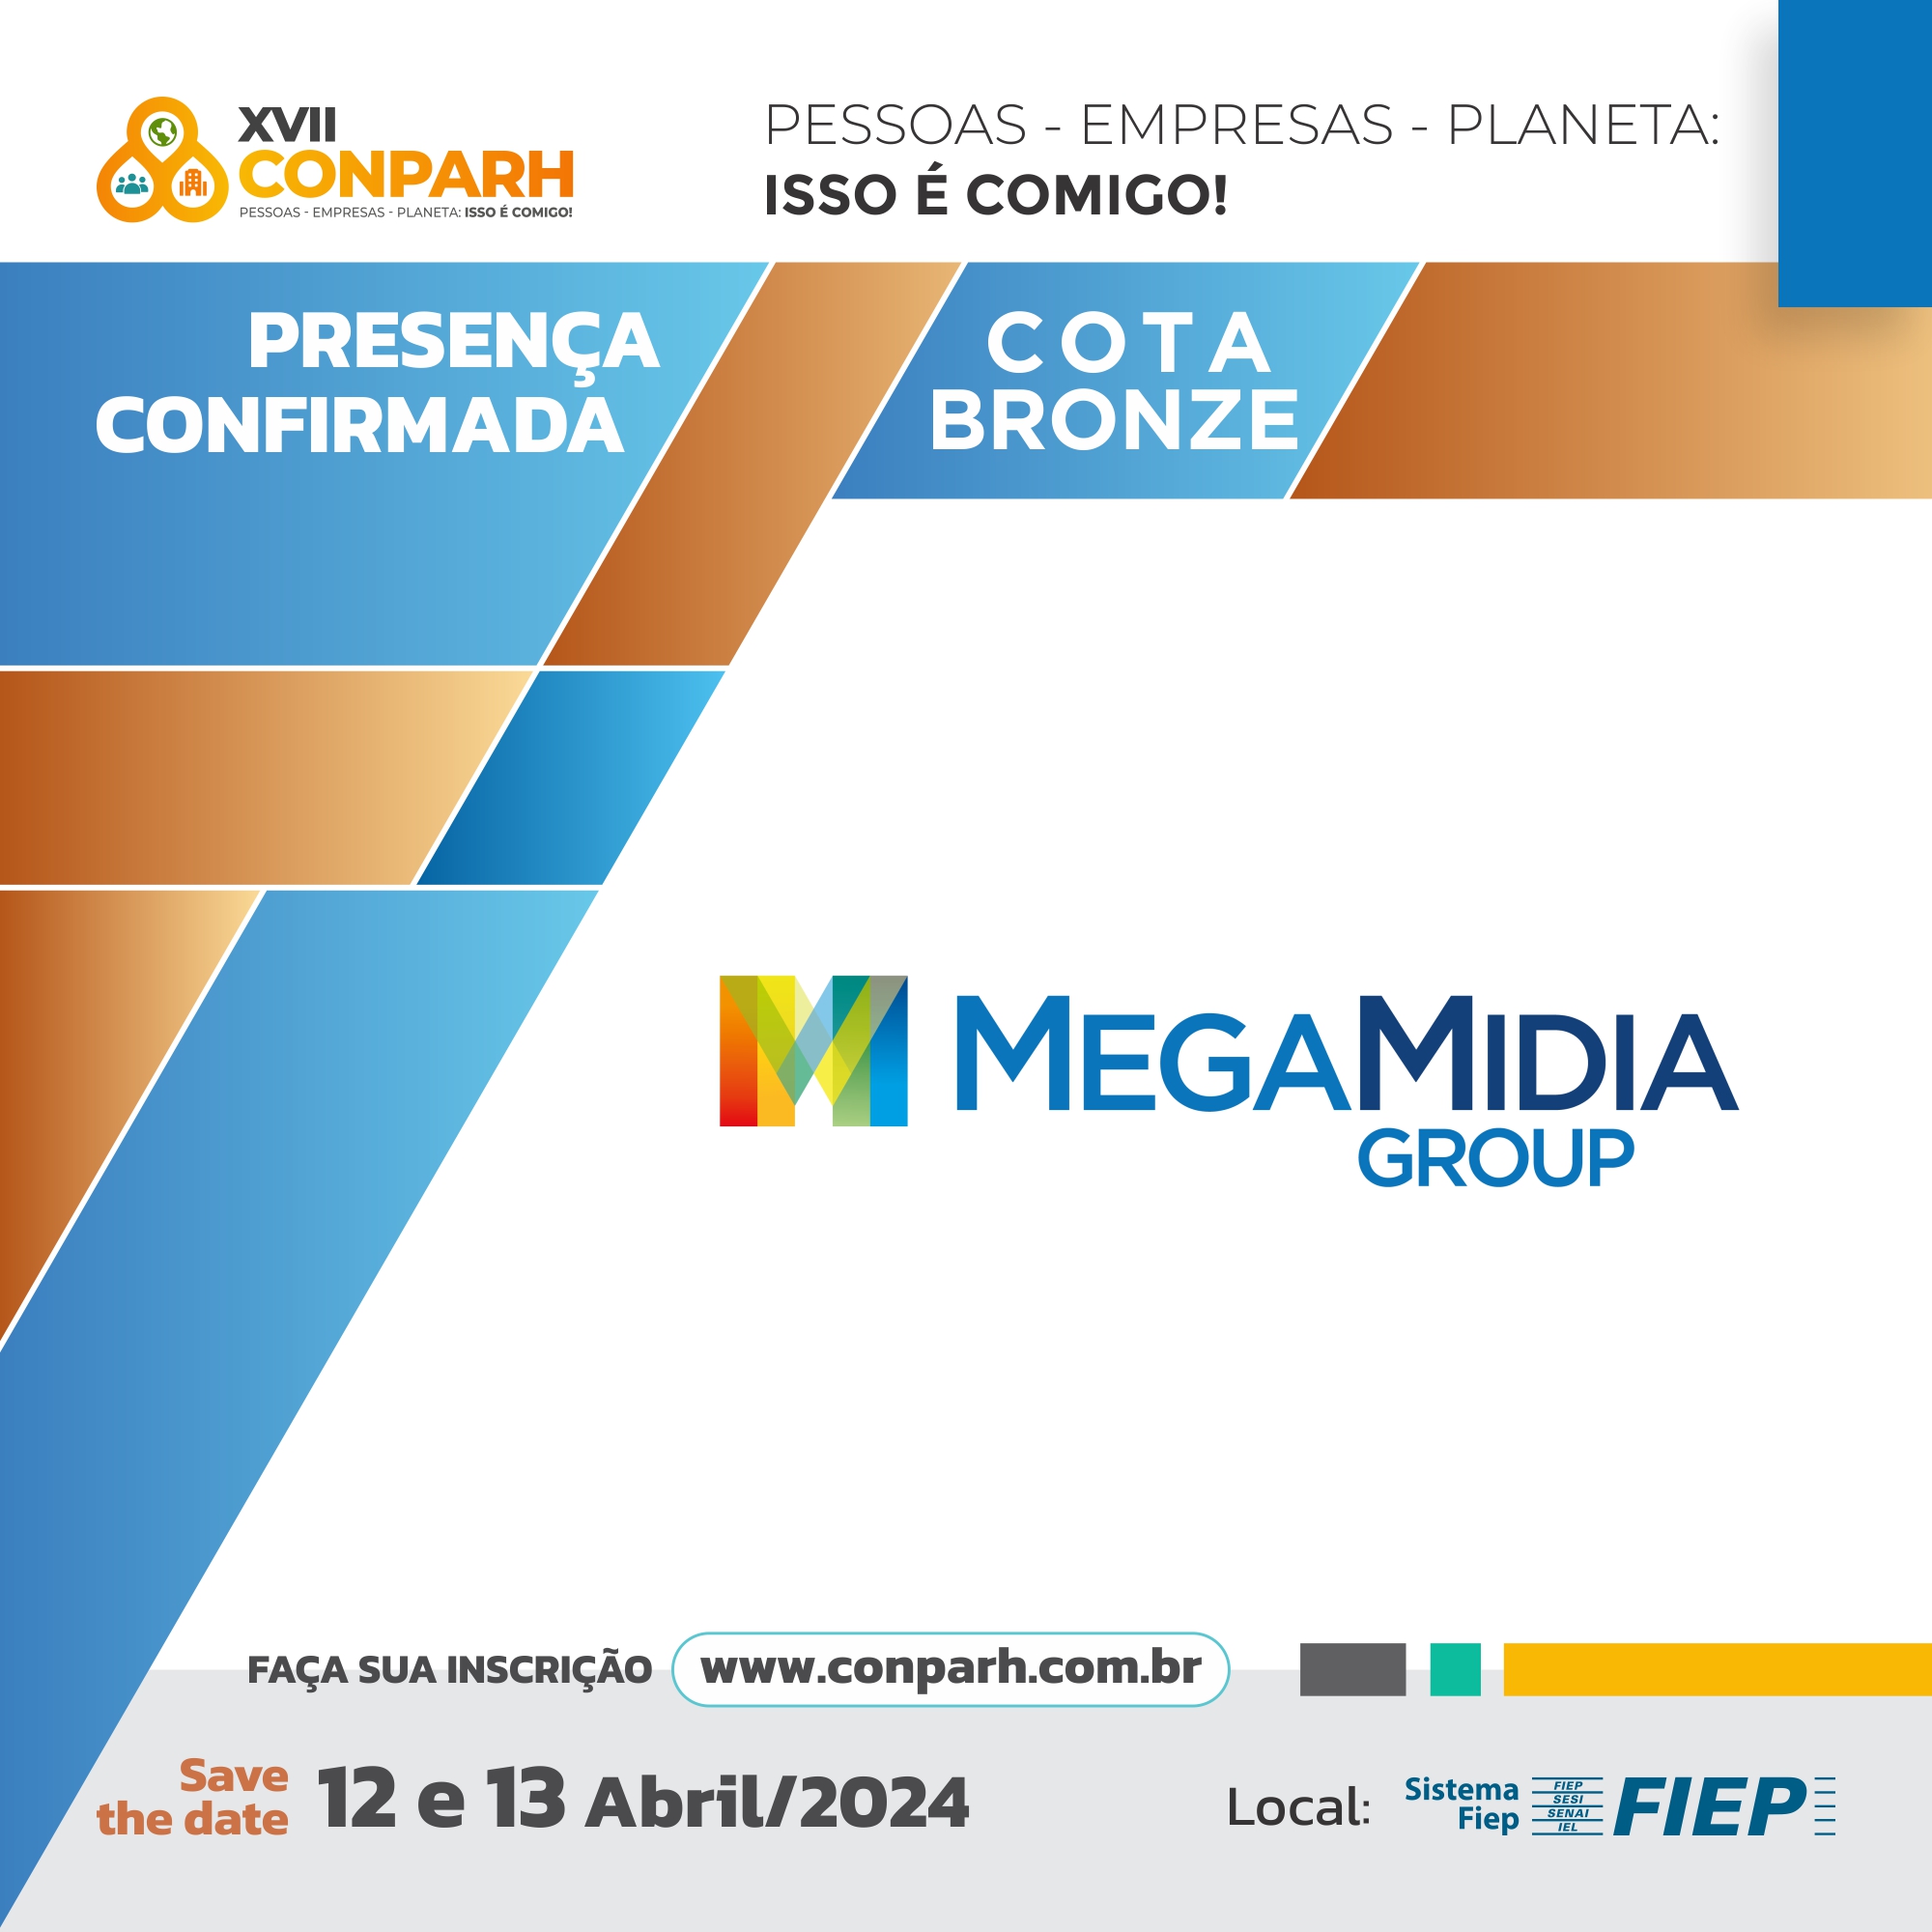 Megamídia Group é patrocinadora do XVII CONPARH